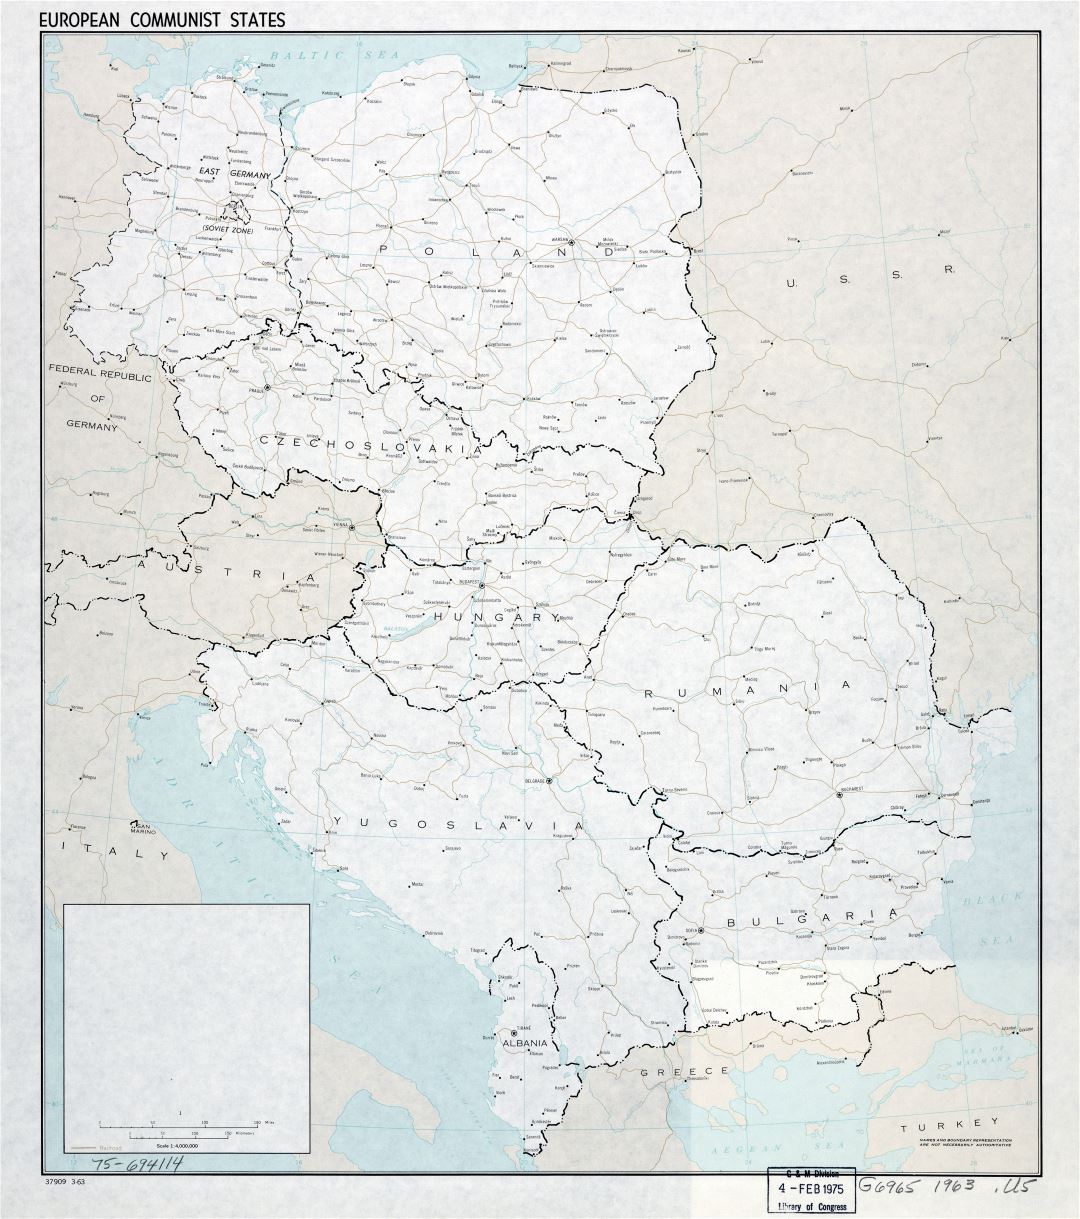 Mapa político a gran escala de los Estados comunistas de Europa con las marcas de capitales, las principales ciudades, ferrocarriles y los nombres de los países - 1963